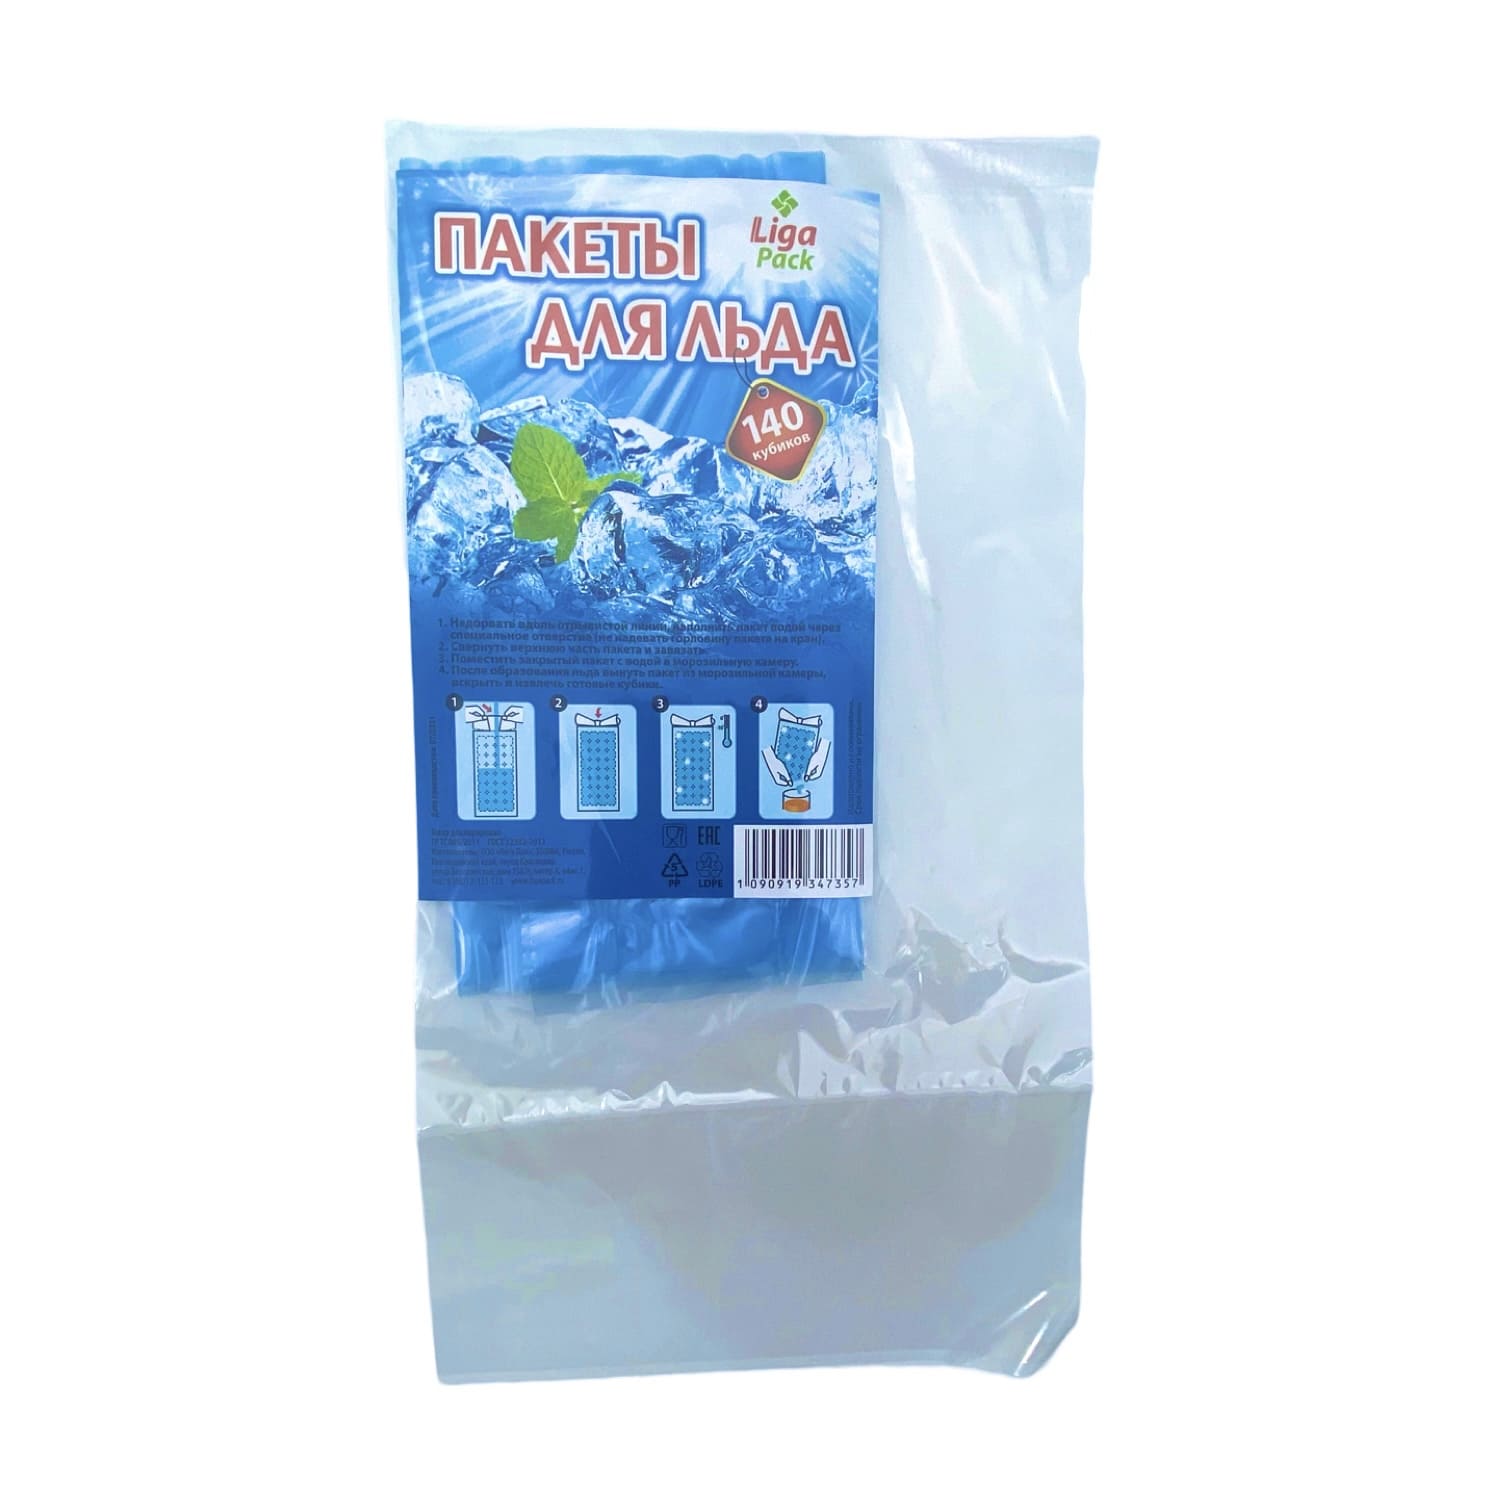 Пакеты для льда "Liga-pack" ЭКО 140 кубика с завязками